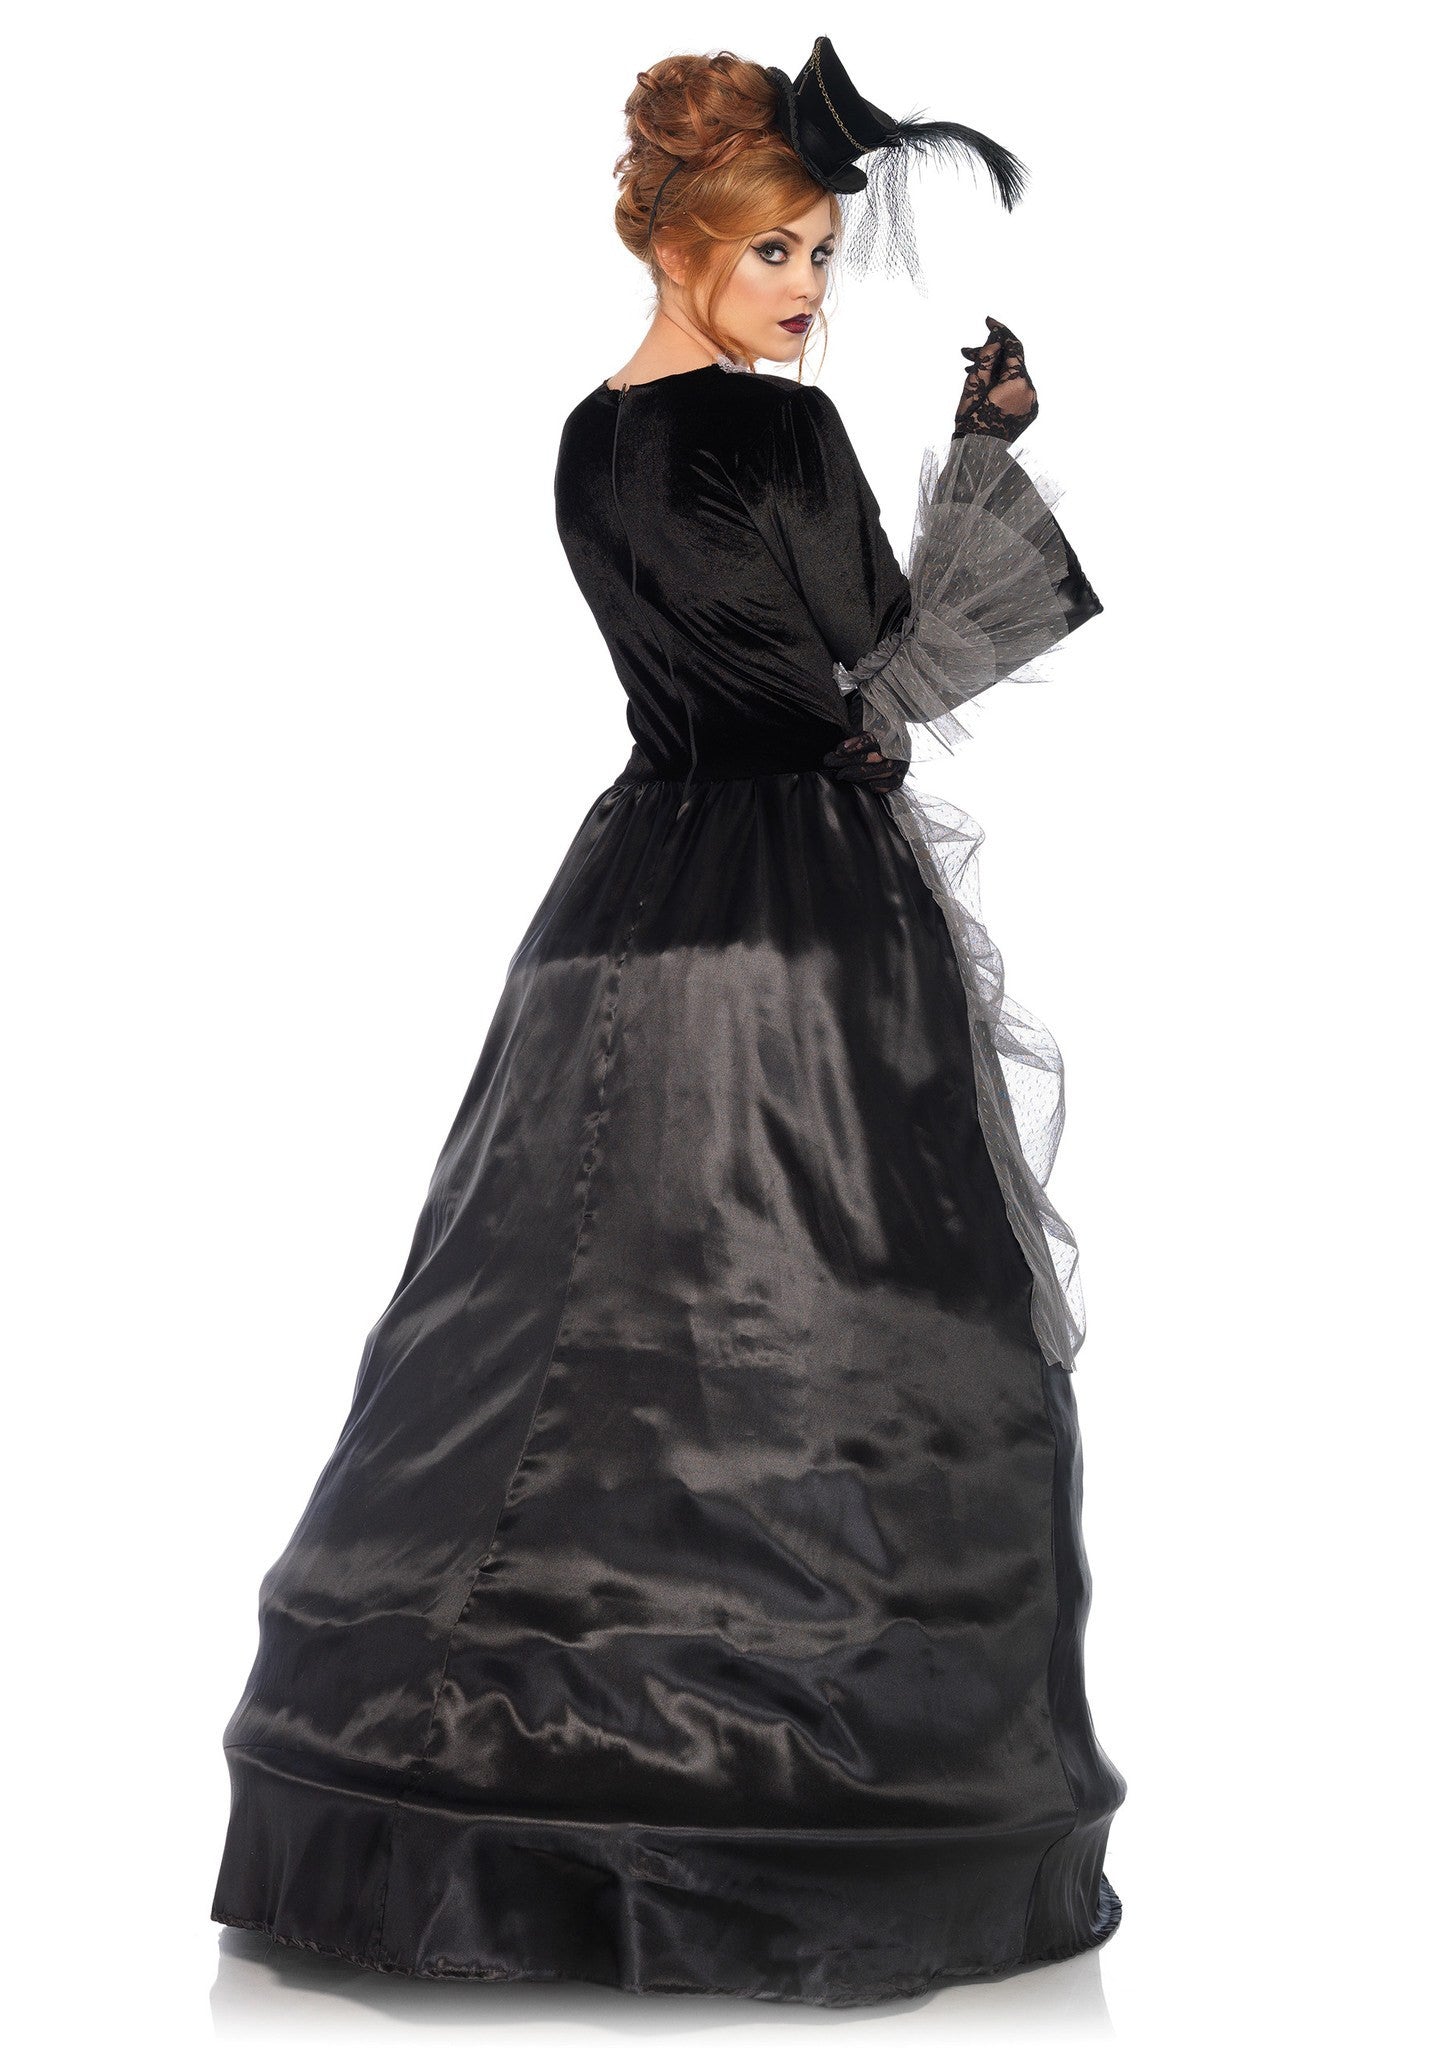 Costume - Velvet Victorian Ball Gown Costume